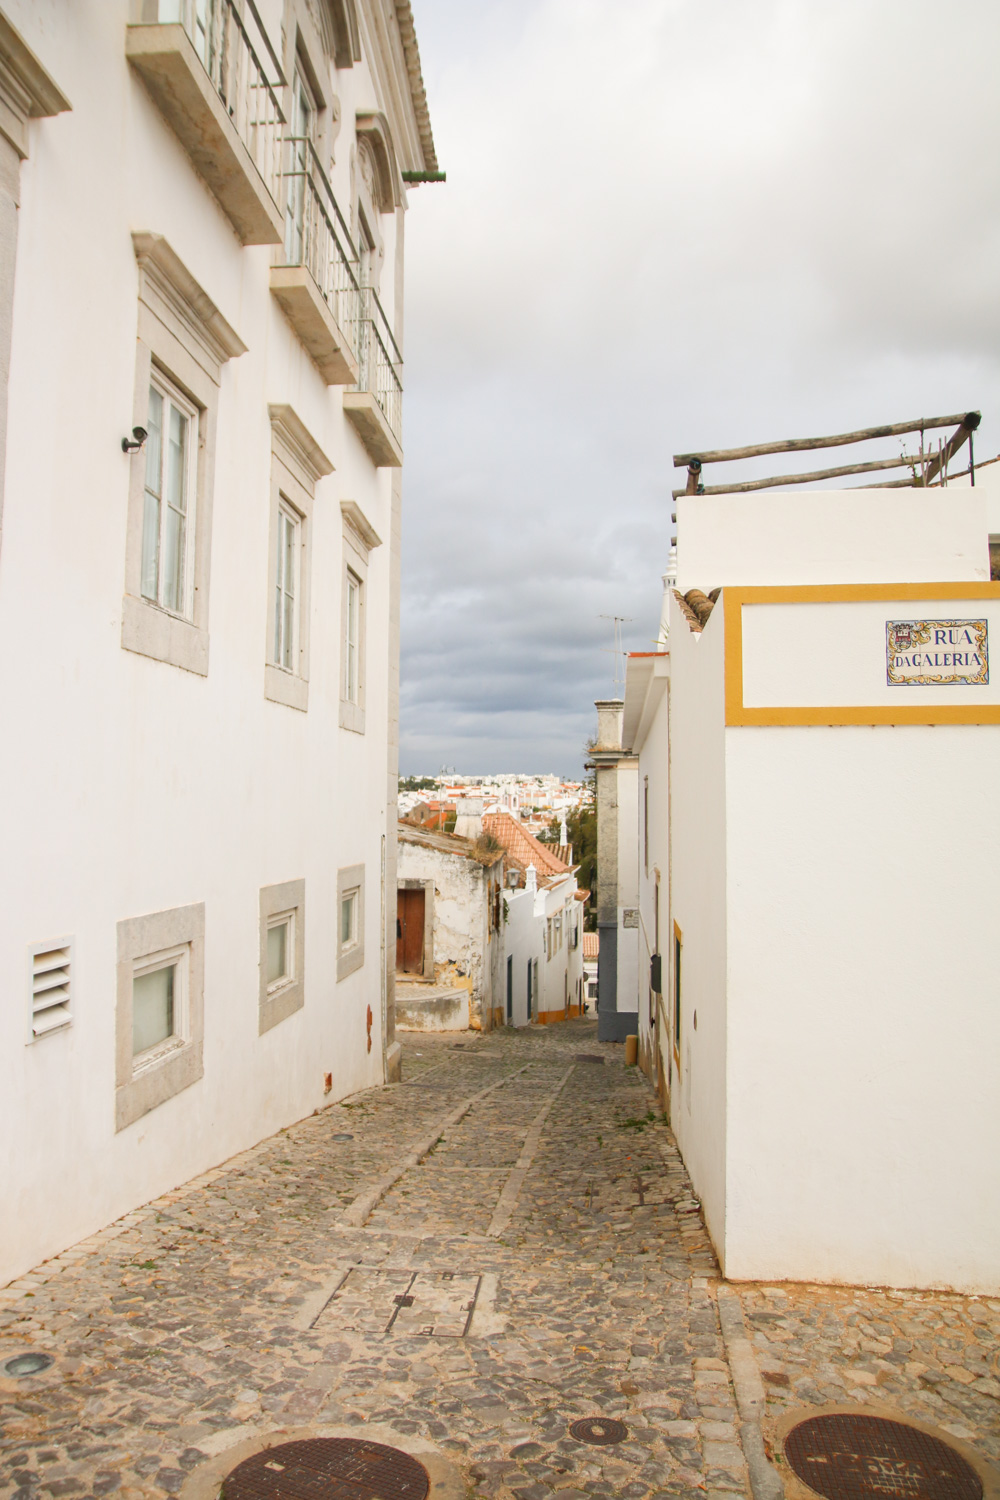 The streets of Tavira, The Algarve in Portugal